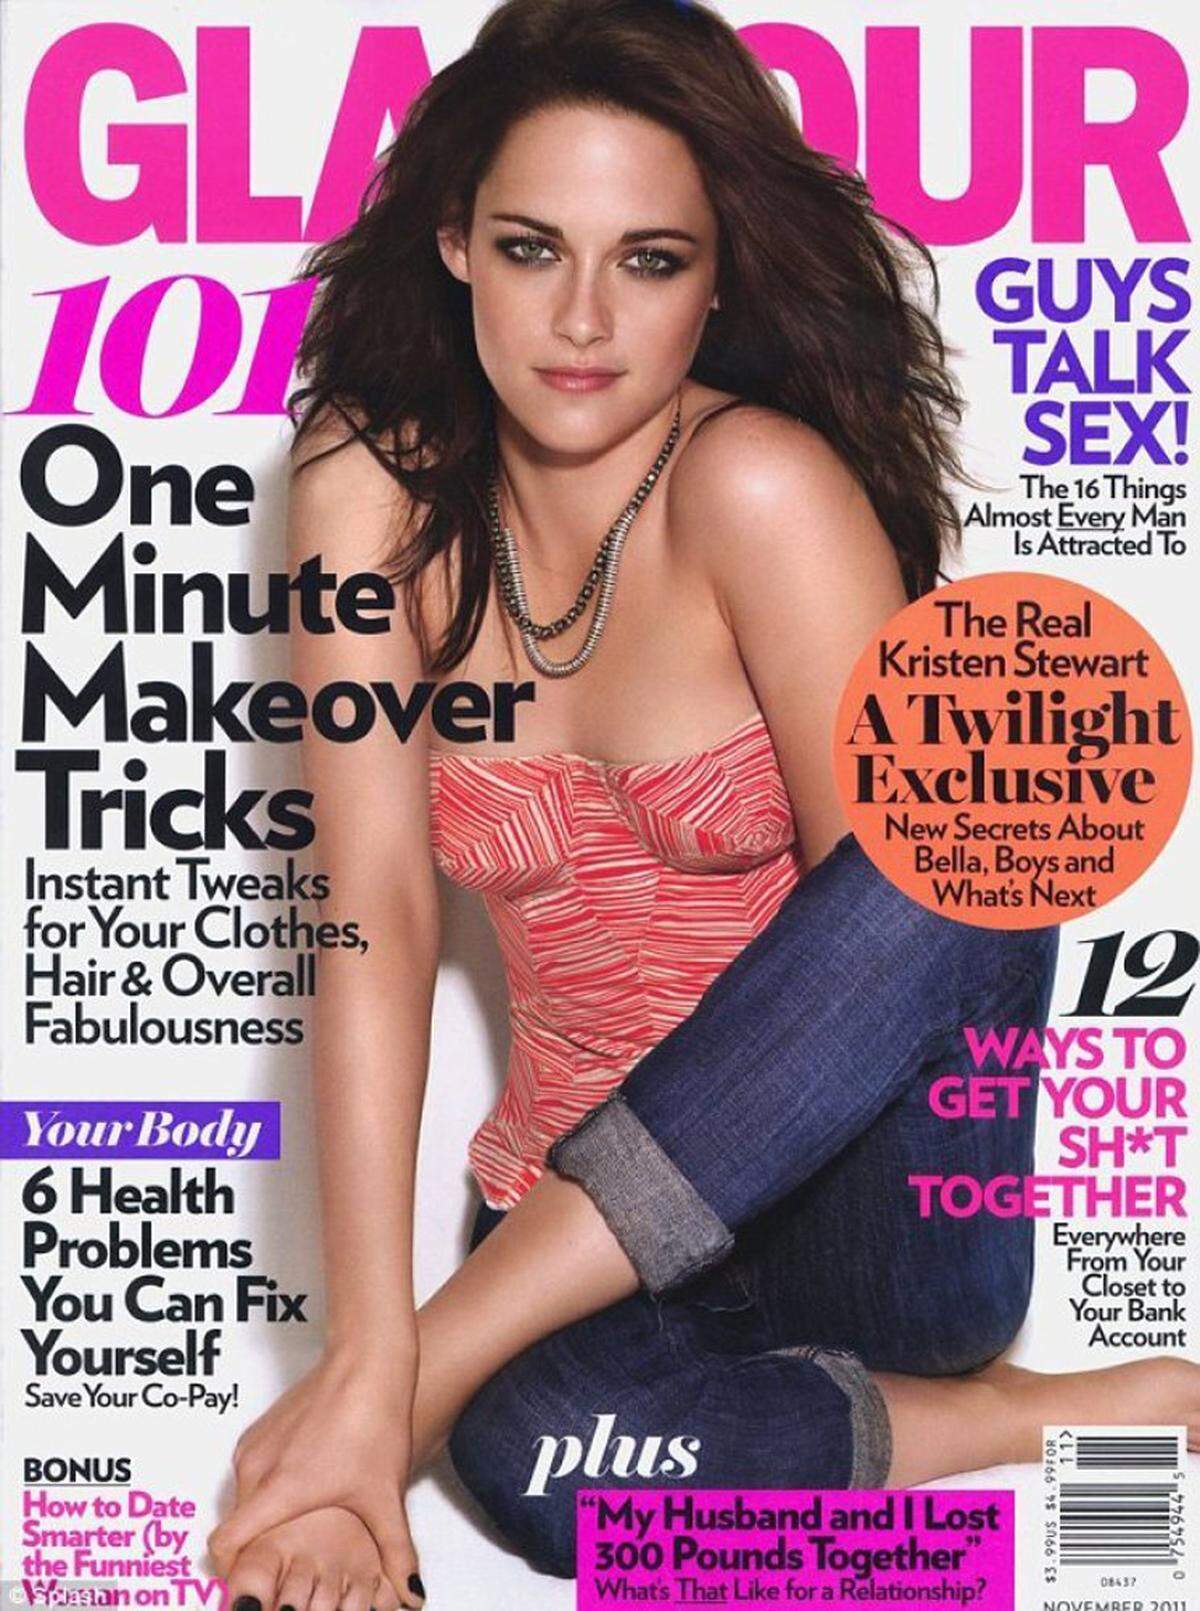 Ganz auf den linken Arm von Kristen Stewart hat man dafür auf diesem Glamour-Magazin vergessen. Kaum zu erkennen sind auch andere Promis auf diesen Magazinen.